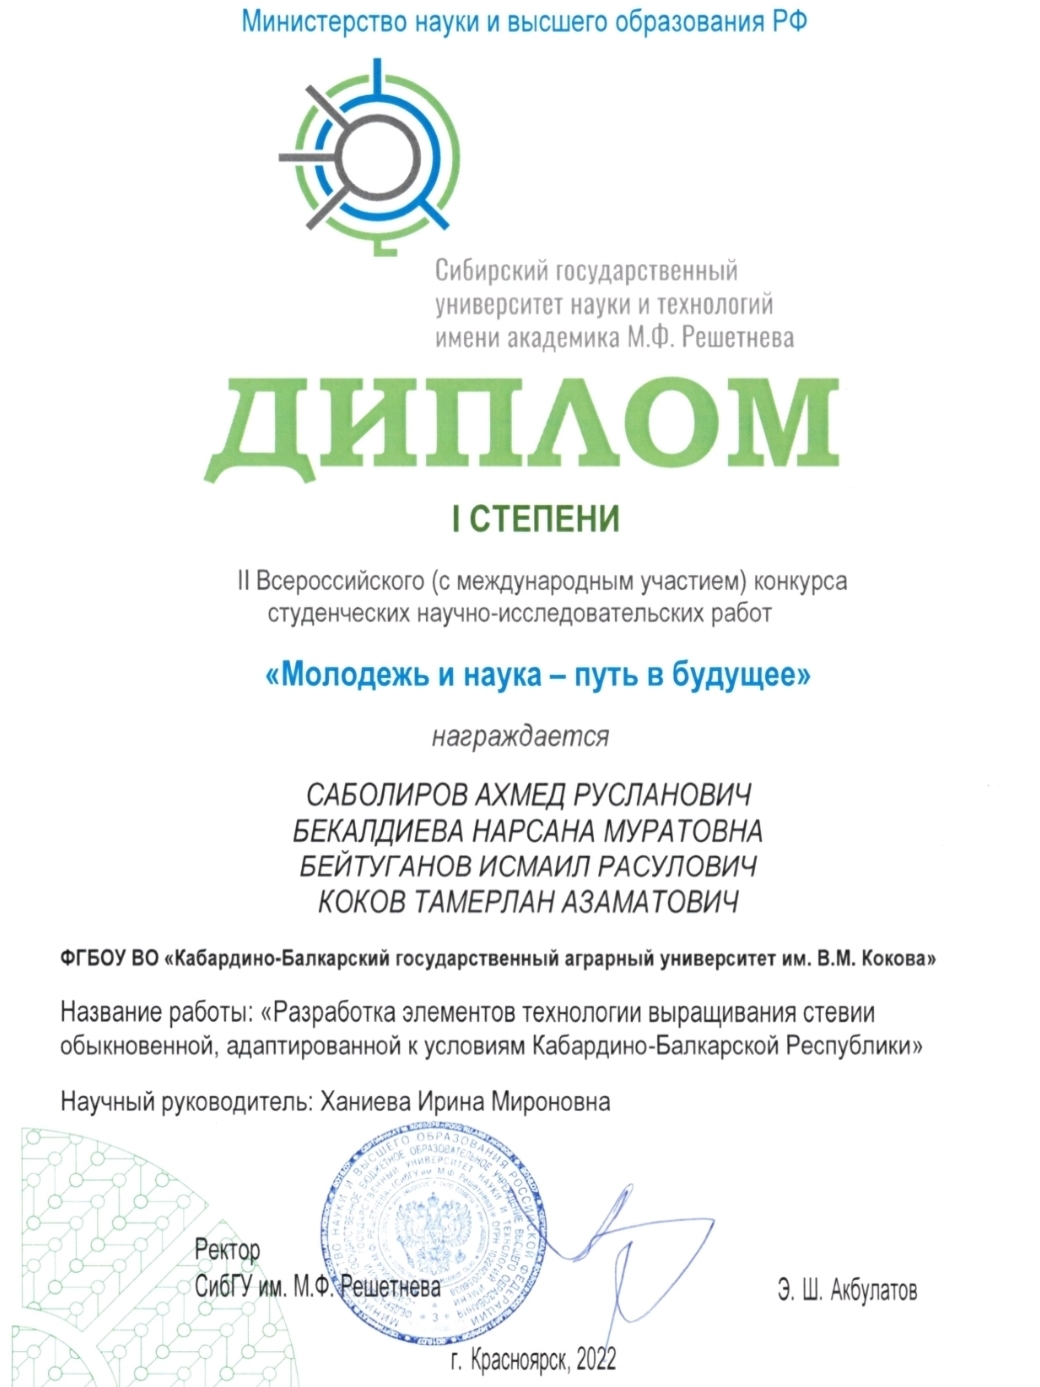 Работа молодых учёных агрономического факультета отмечена дипломом I степени всероссийского конкурса